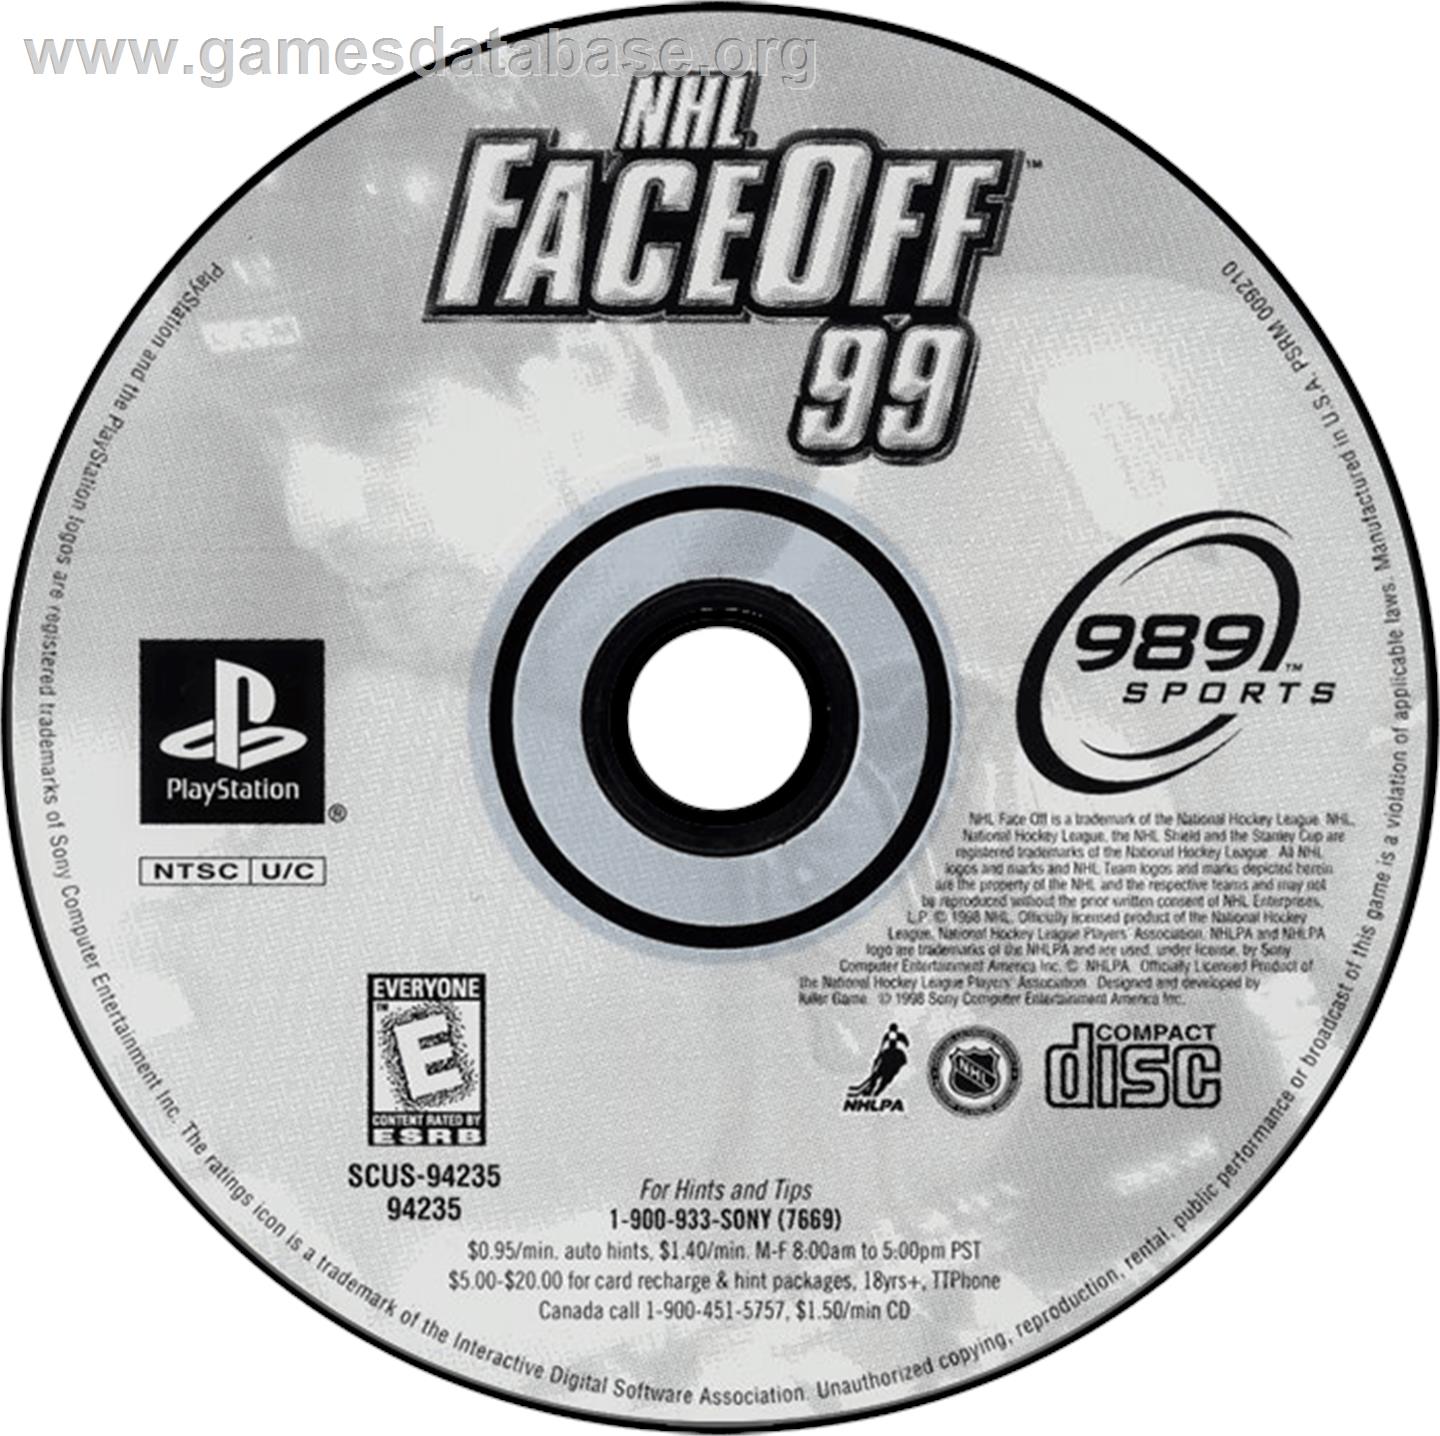 NHL FaceOff '99 - Sony Playstation - Artwork - Disc